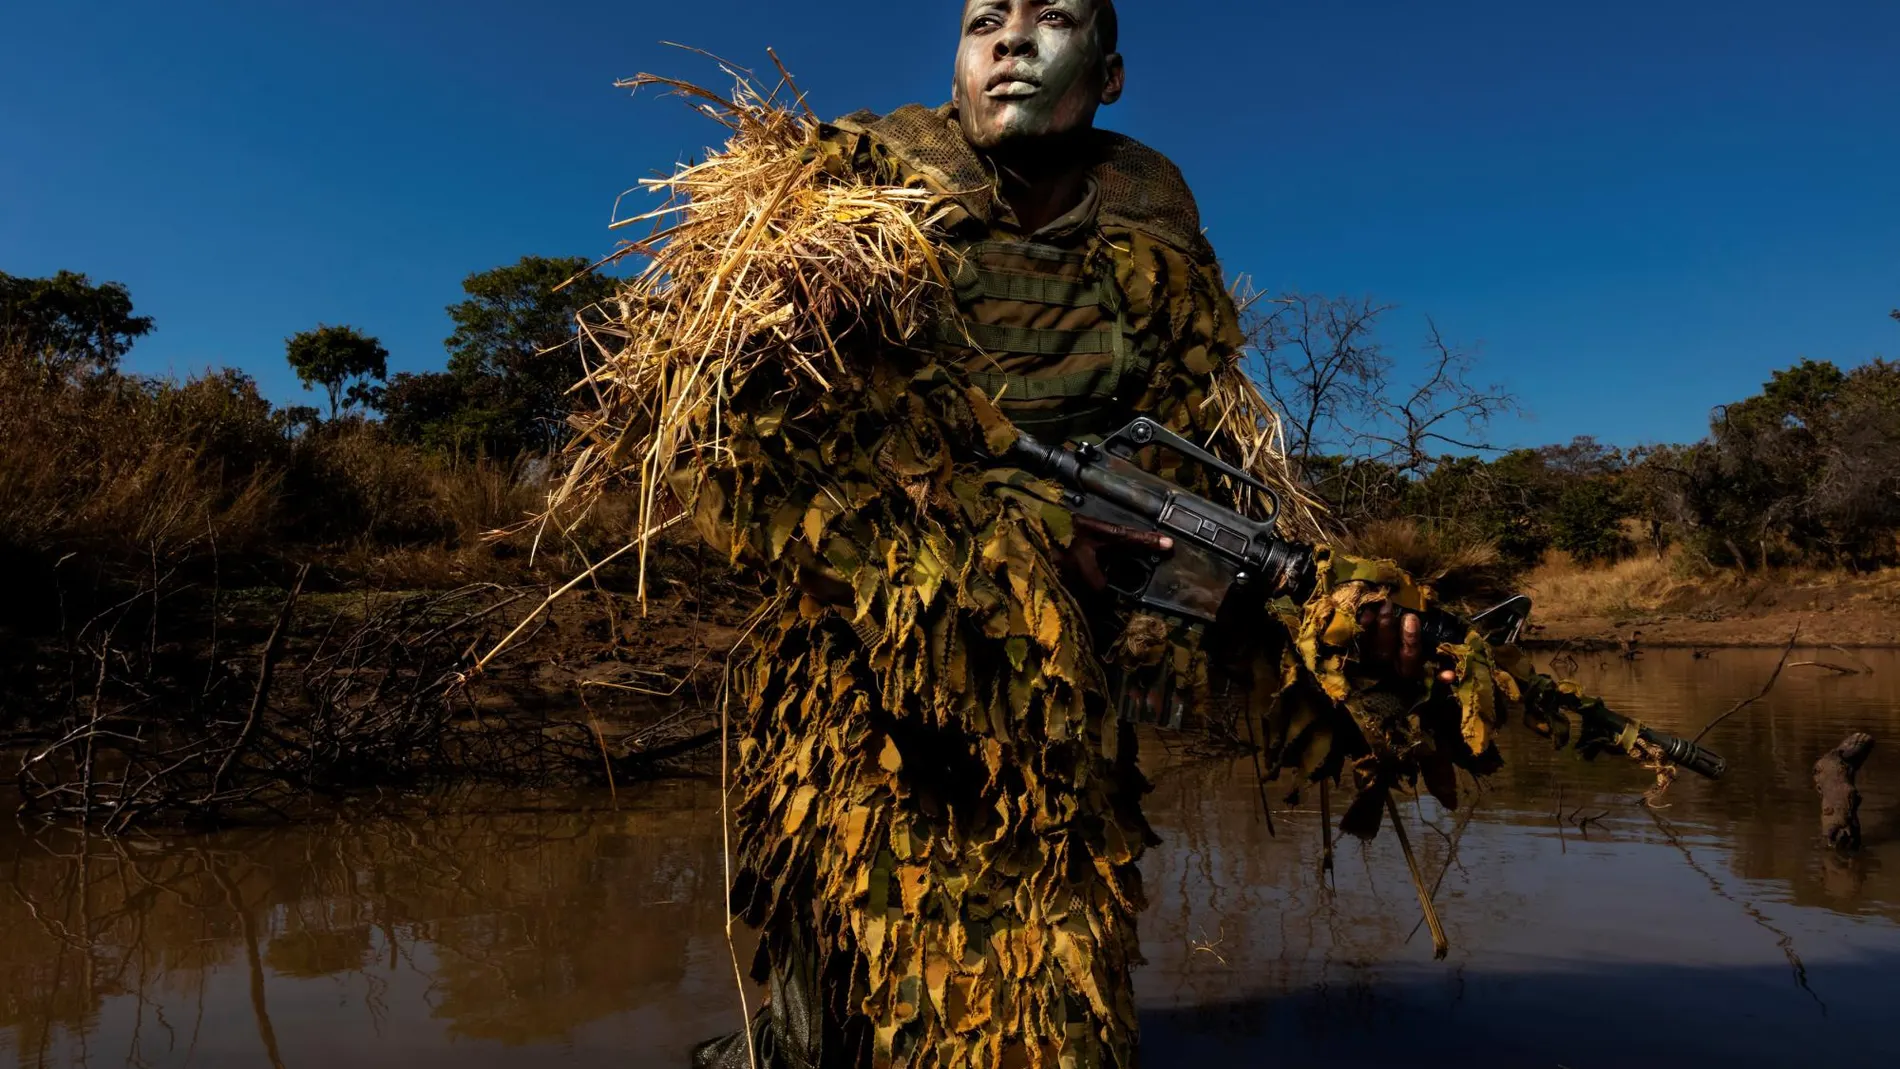 Petronella Chigumbura forma parte de un grupo de guardabosques compuesto únicamente por mujeres que persigue a cazadores furtivos en el parque natural de Phundundu, en Zimbabue. La imagen es de Brent Stirton, fotógrafo de Getty Images y colaborador de National Geographic